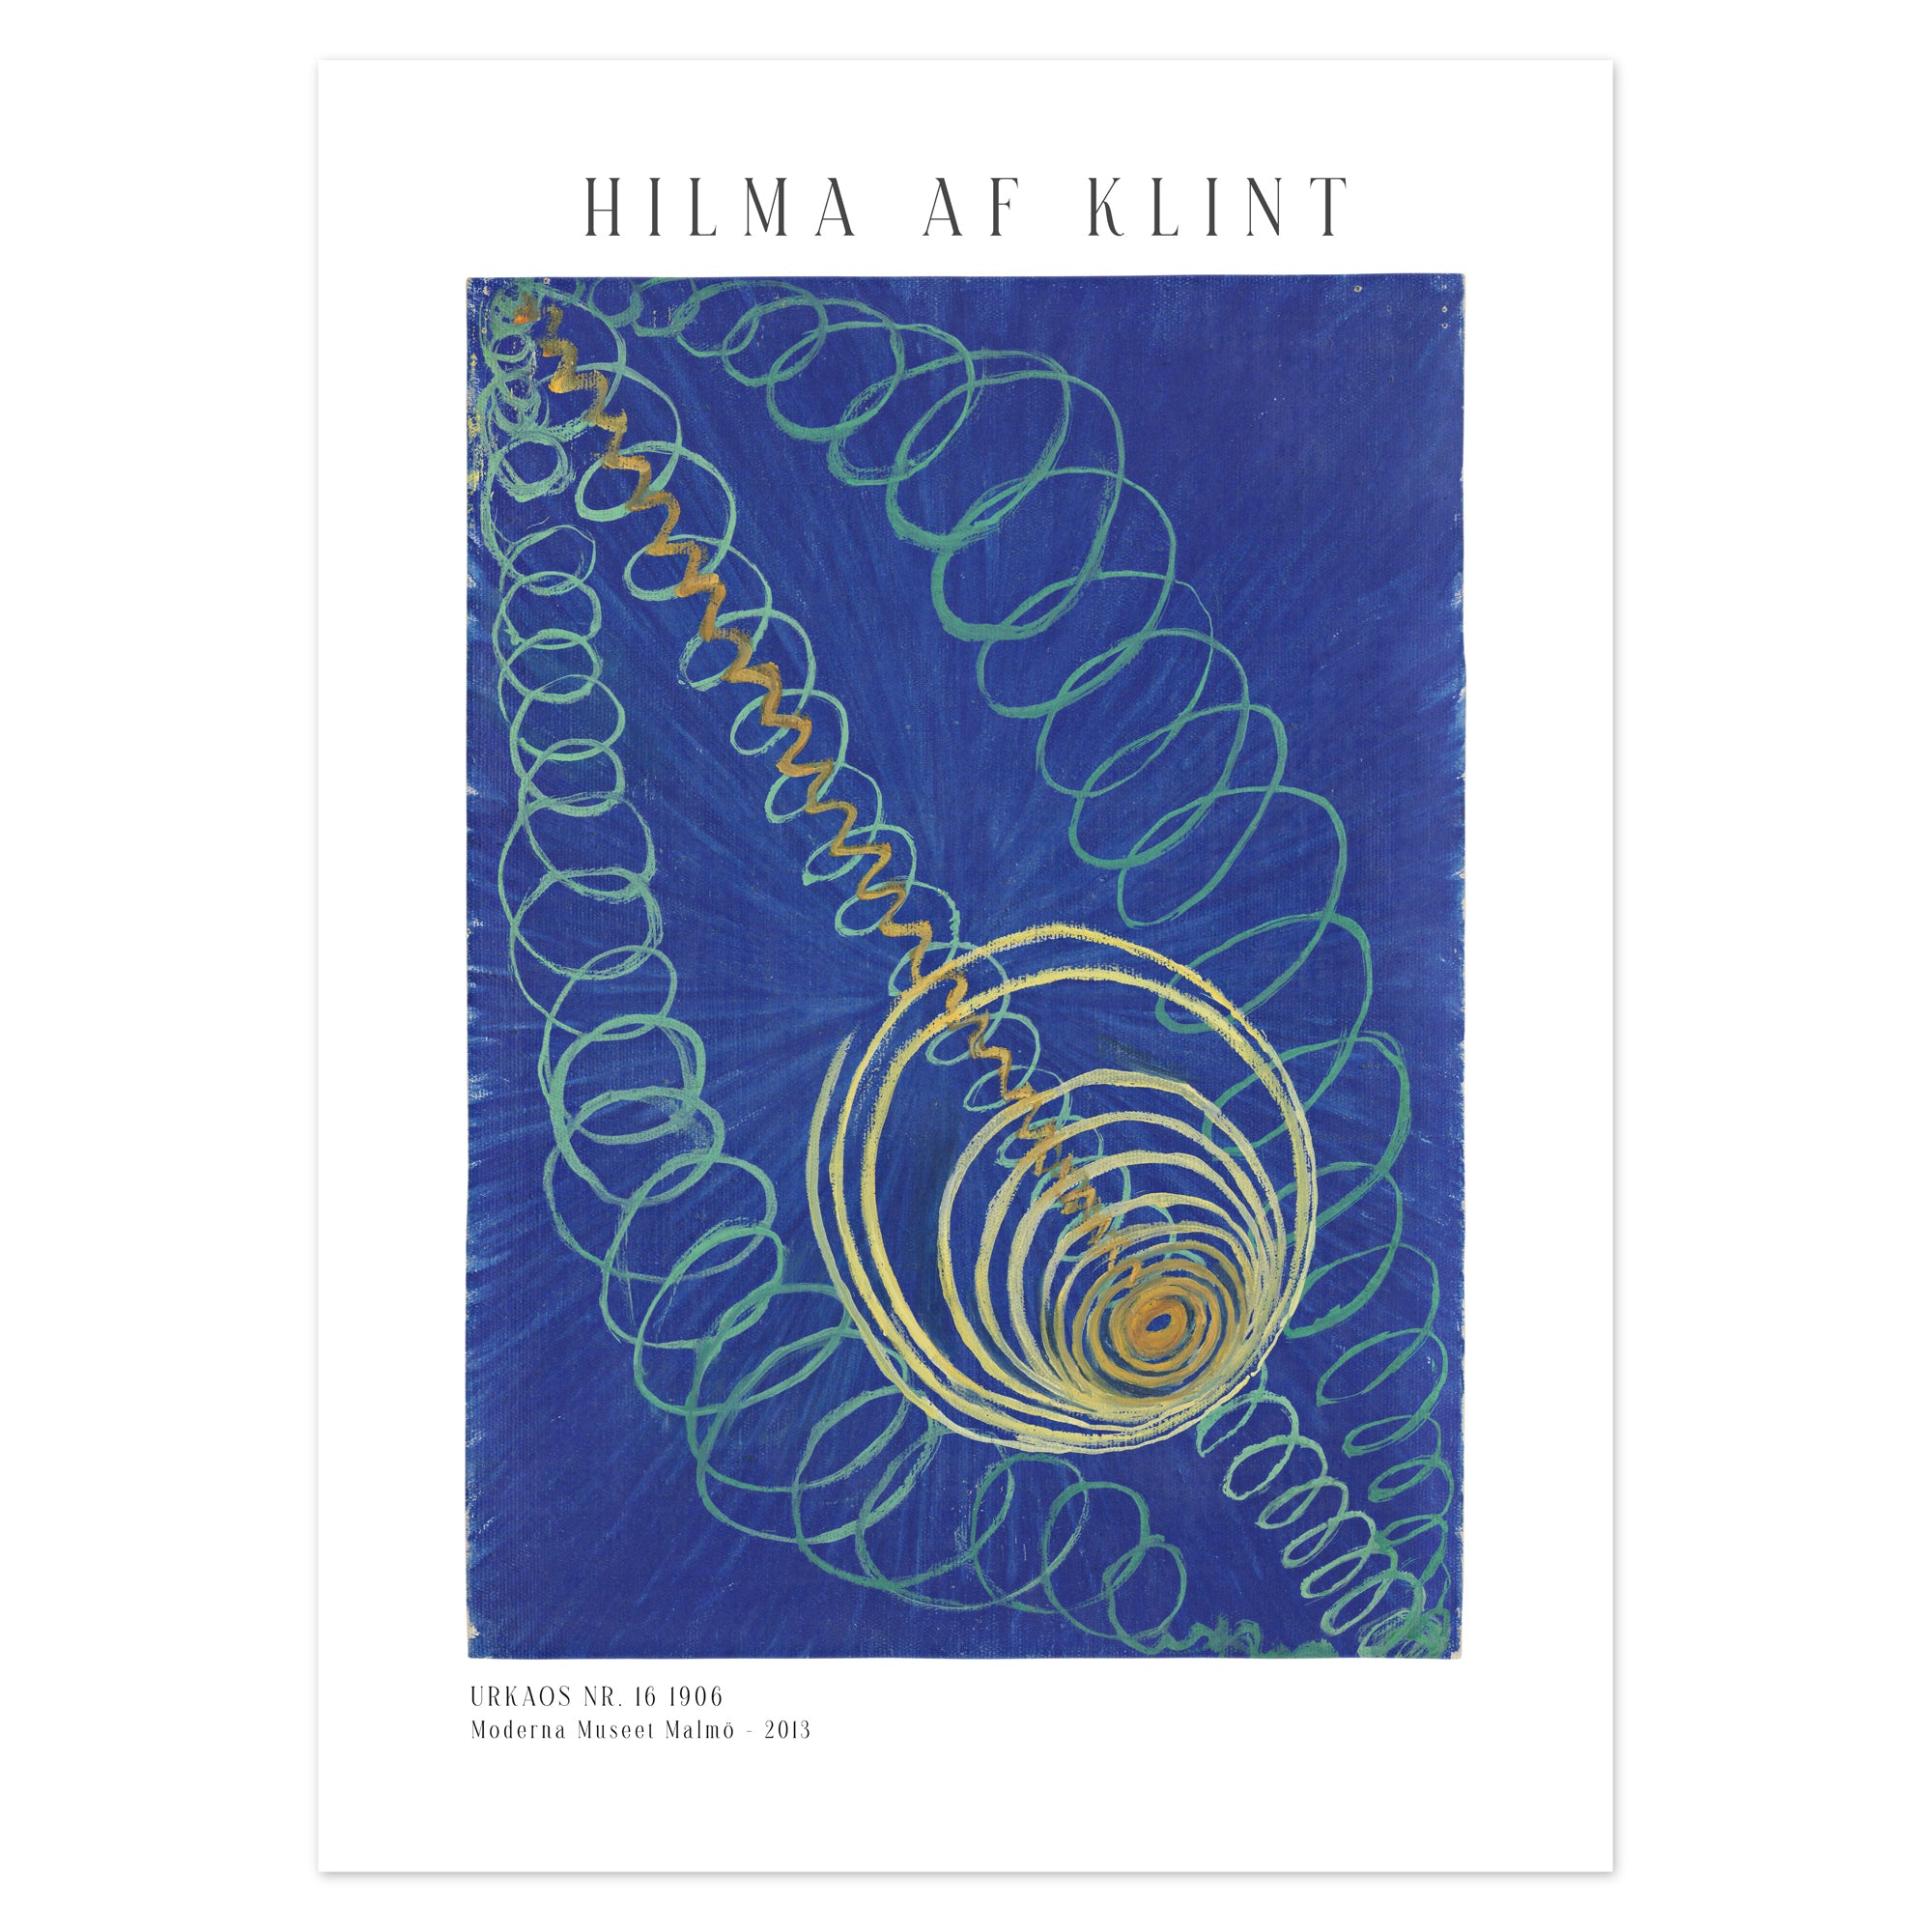 Hilma af Klint poster - Urkaos nr. 16